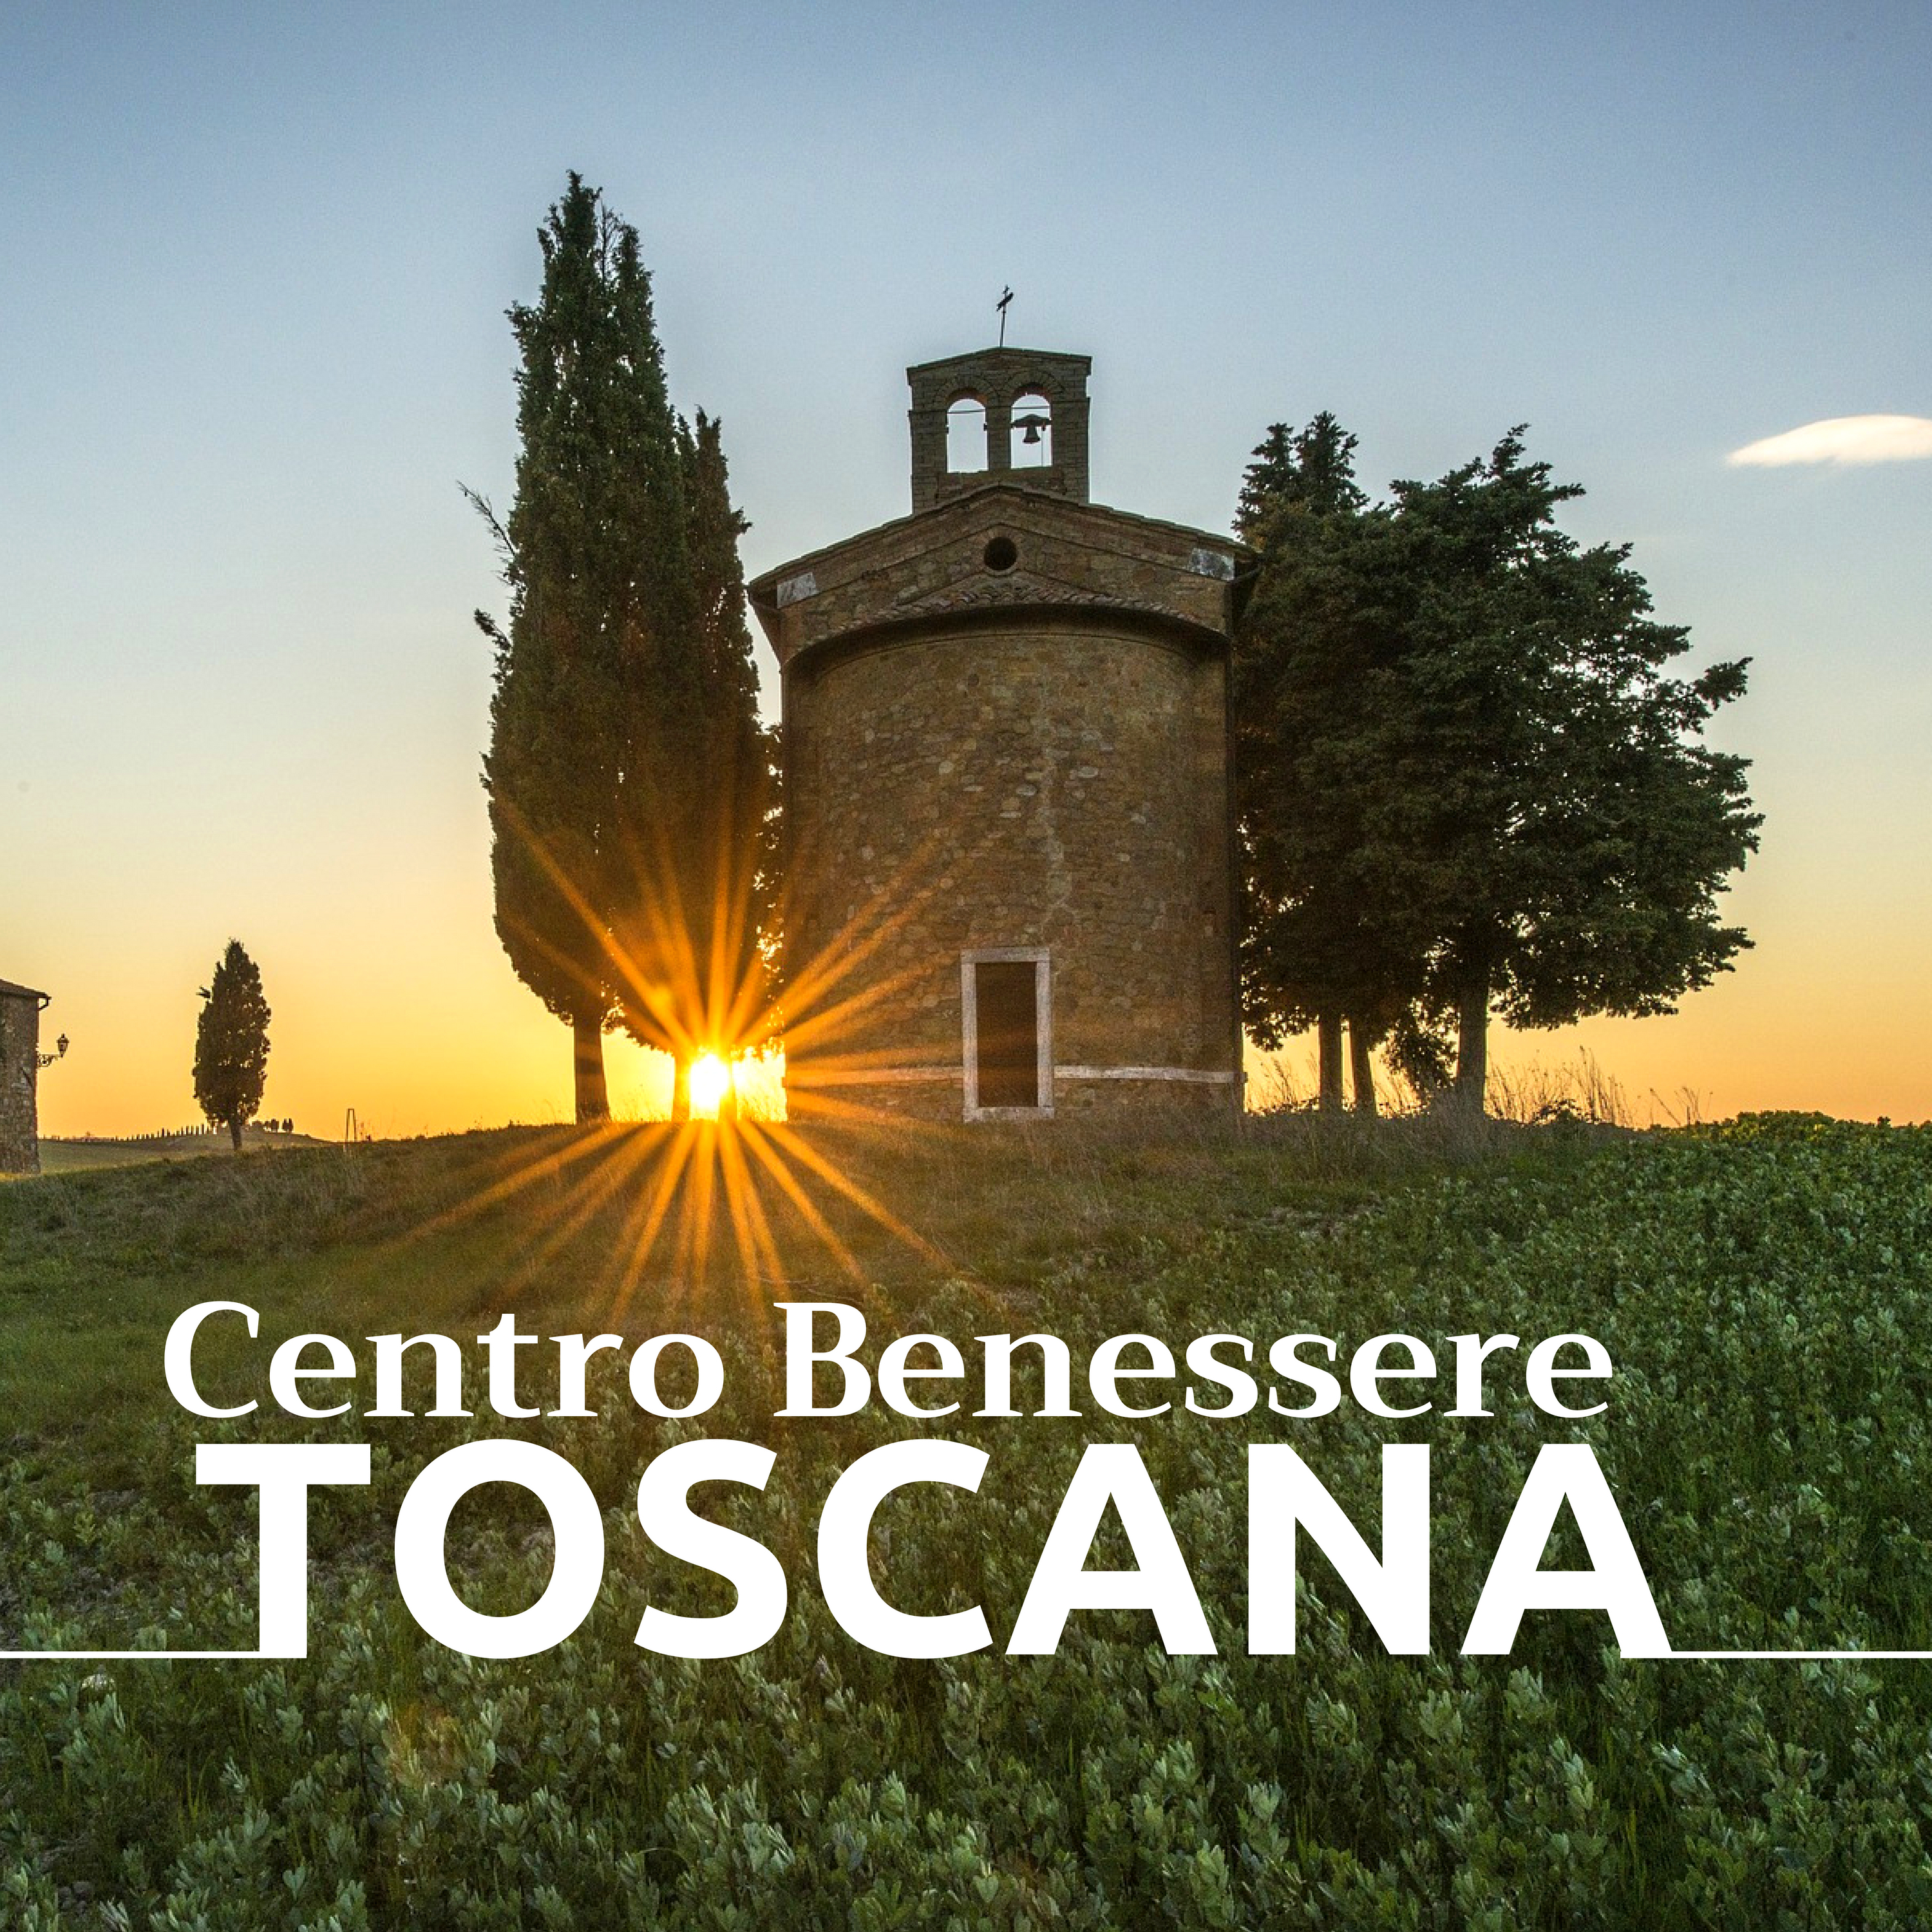 Centro Benessere Toscana - 22 Musiche Strumentali di Sottofondo per Spa, Massaggio, Ayurveda, Yoga e Meditazione